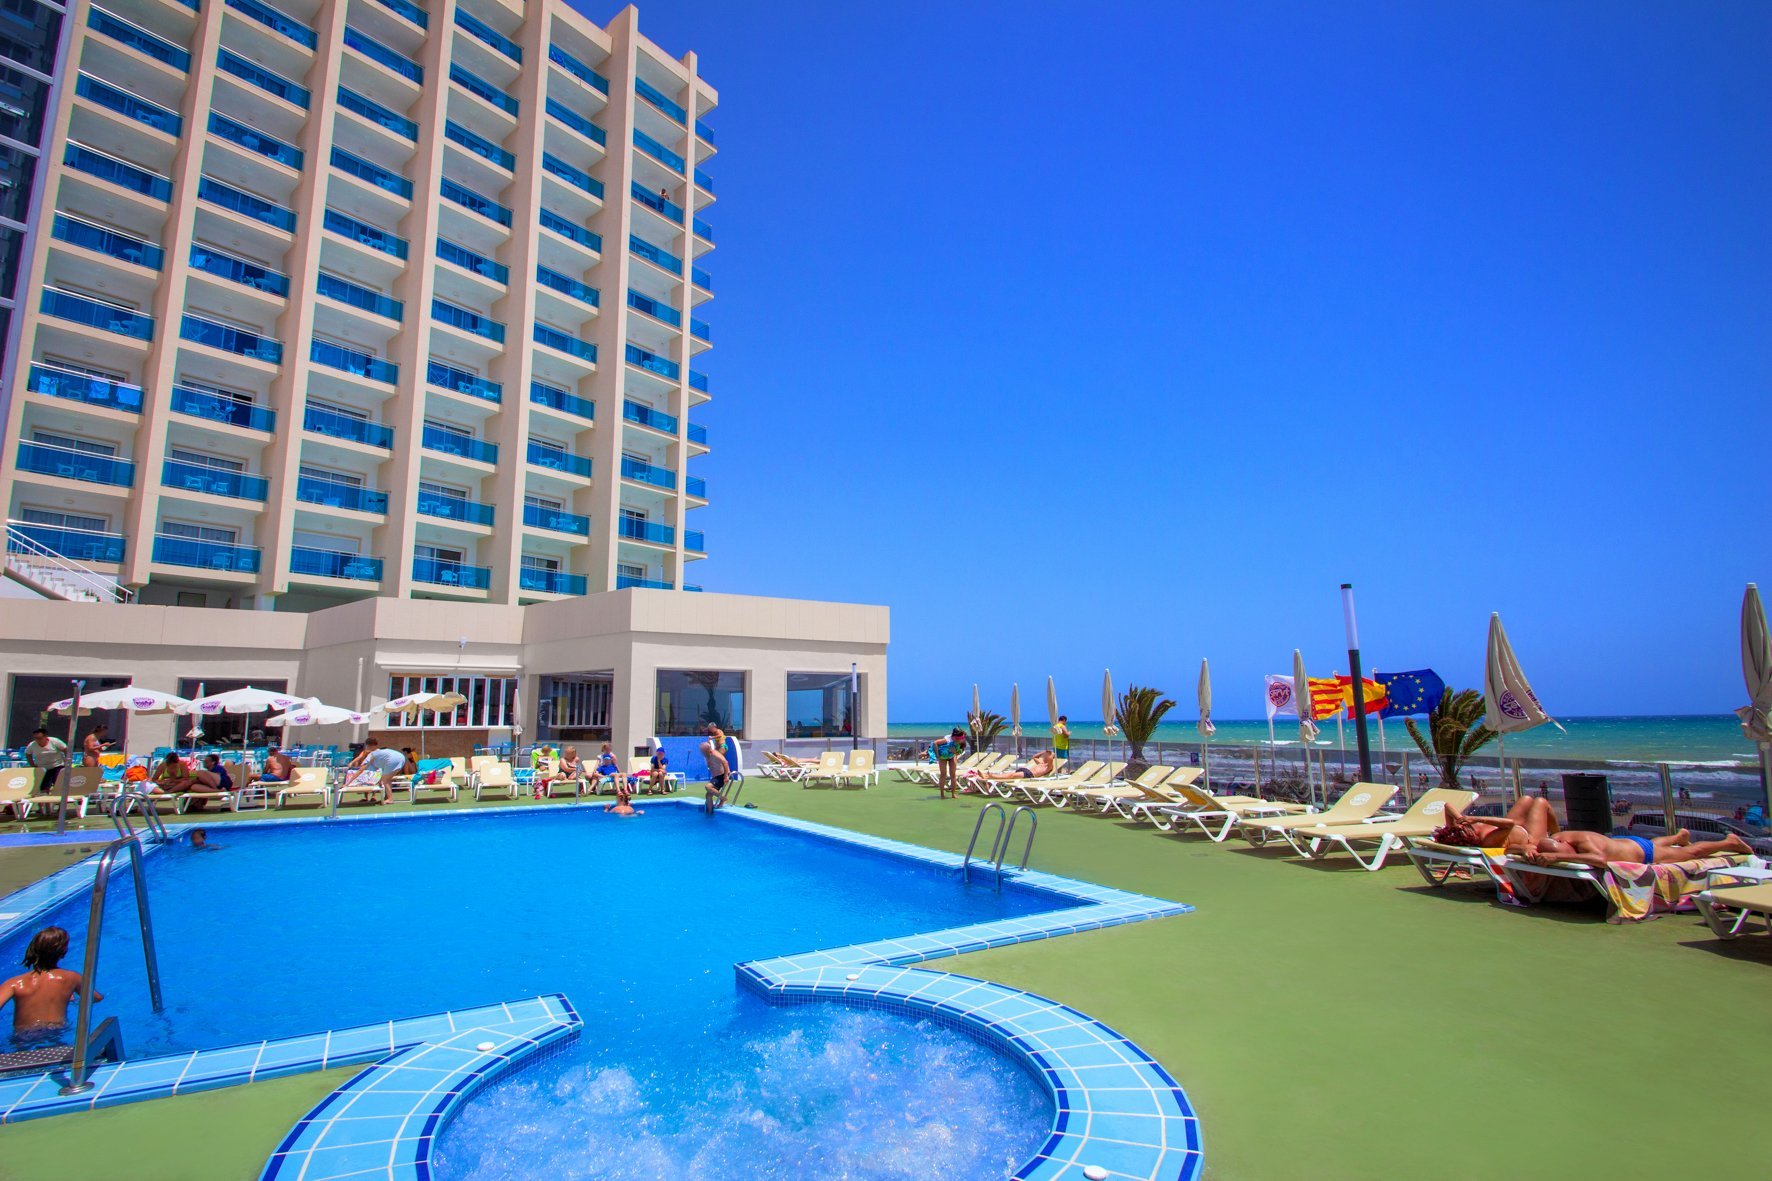 06-oropesa-del-mar-hotel-koral-beach-piscina-02.jpg